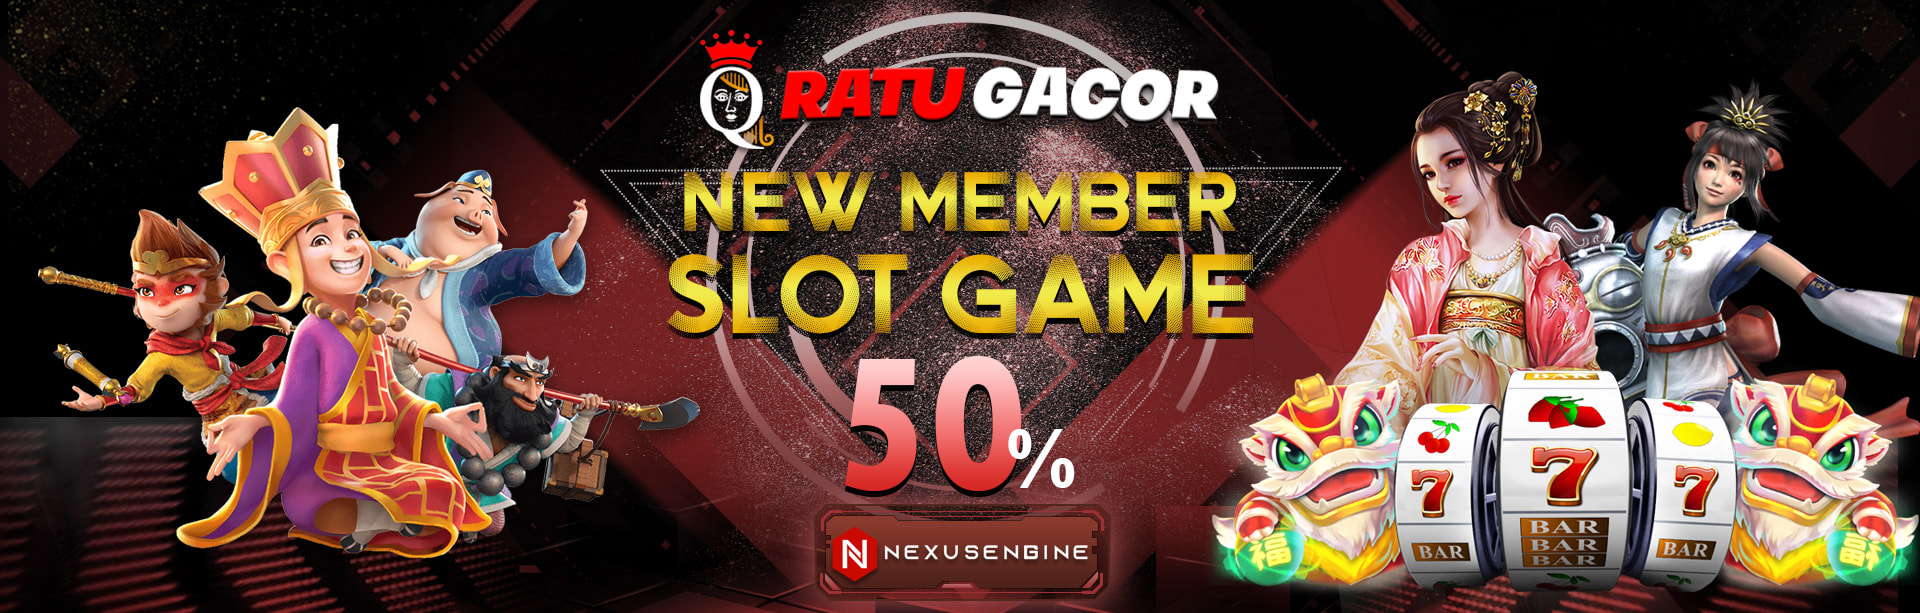 Bonus Slot 50% Ratu Gacor